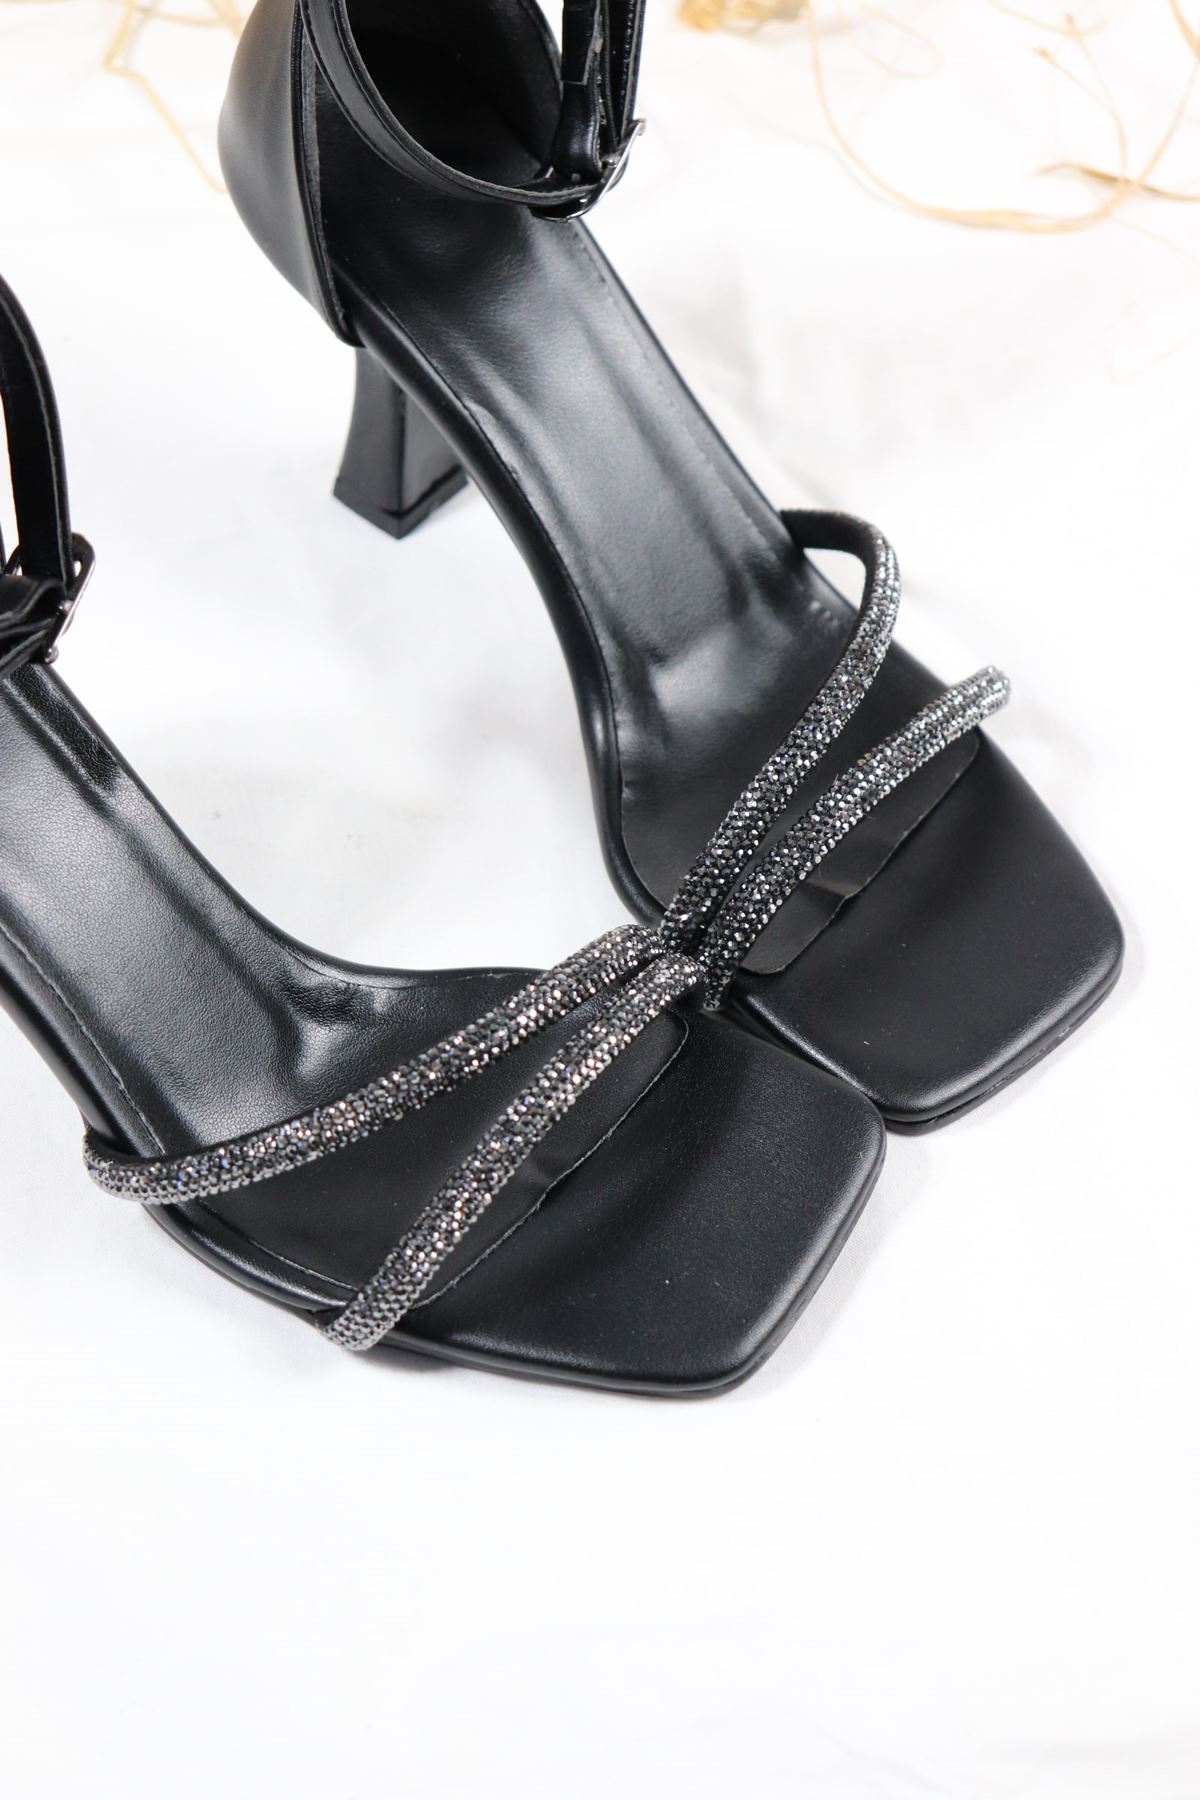 Trendayakkabı - Siyah Topuklu Kadın Ayakkabı 